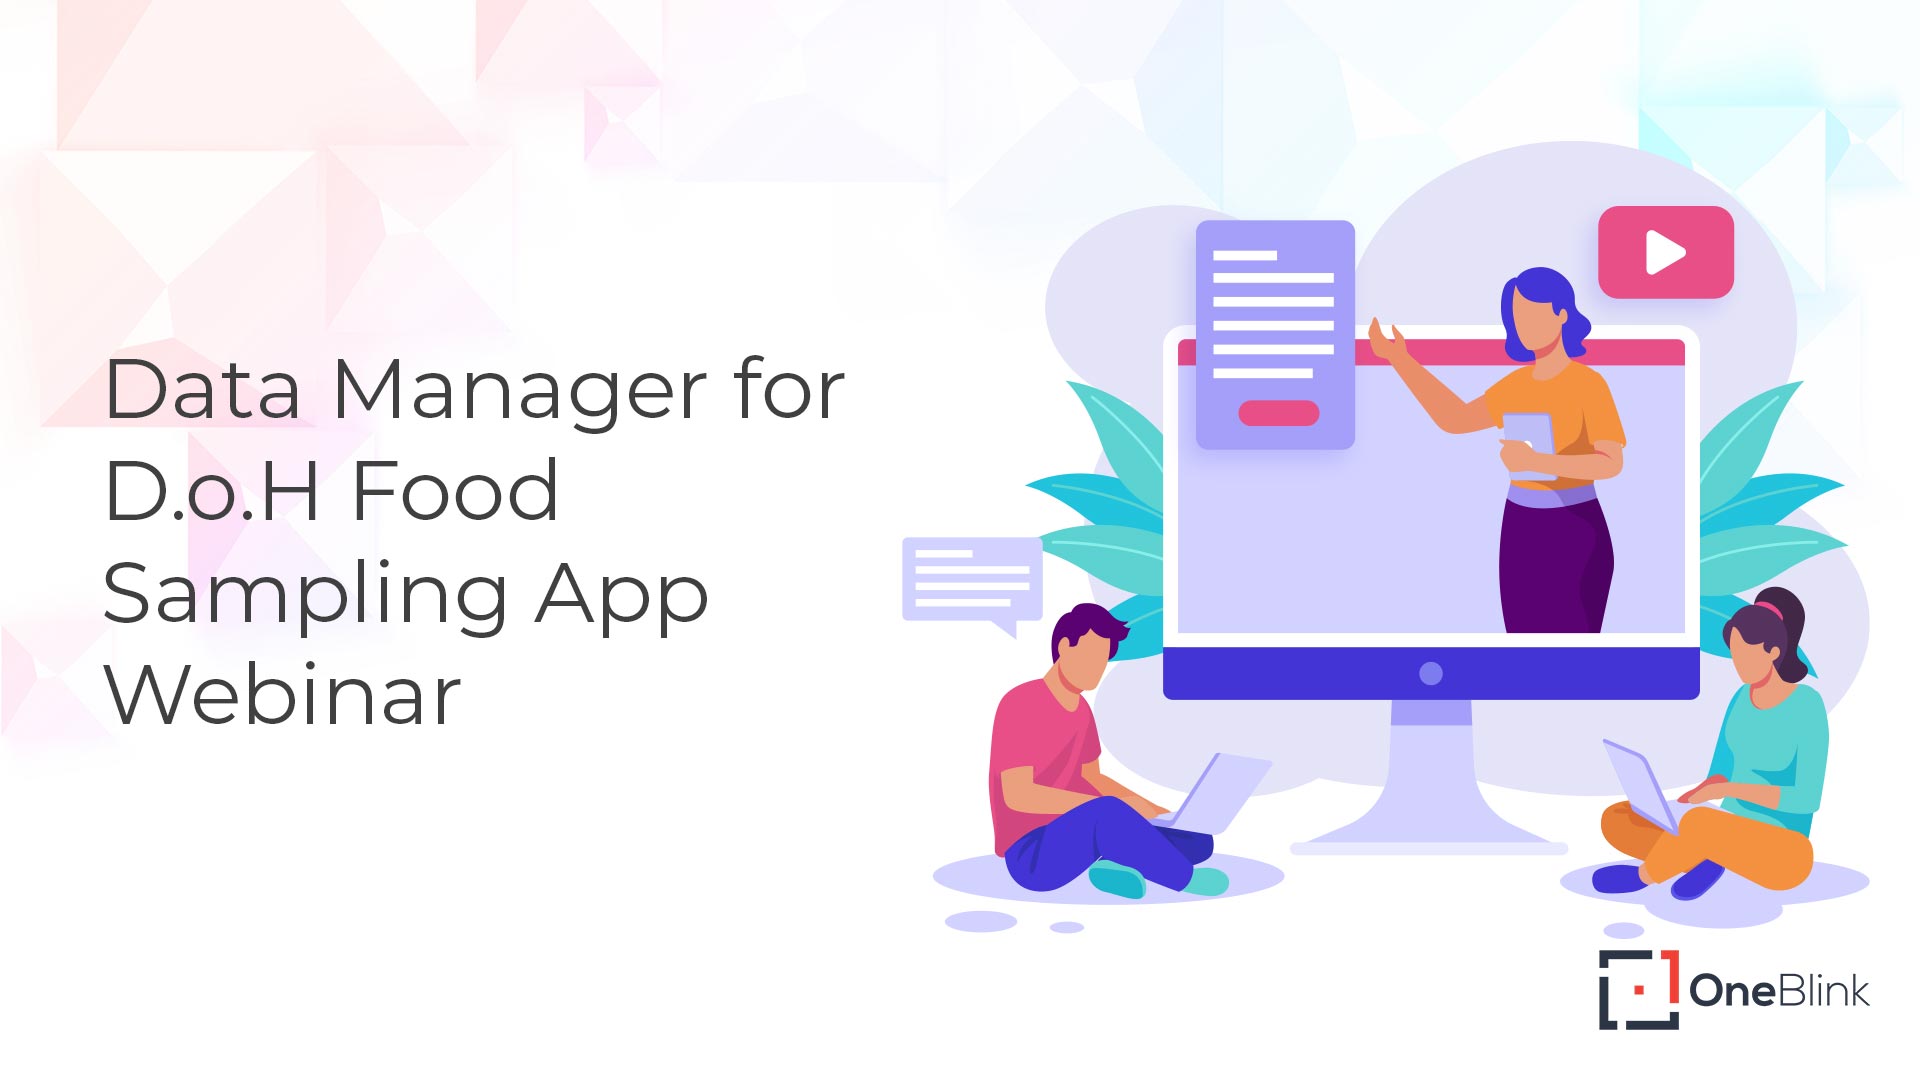 Data Manager For D.o.H Food Sampling App